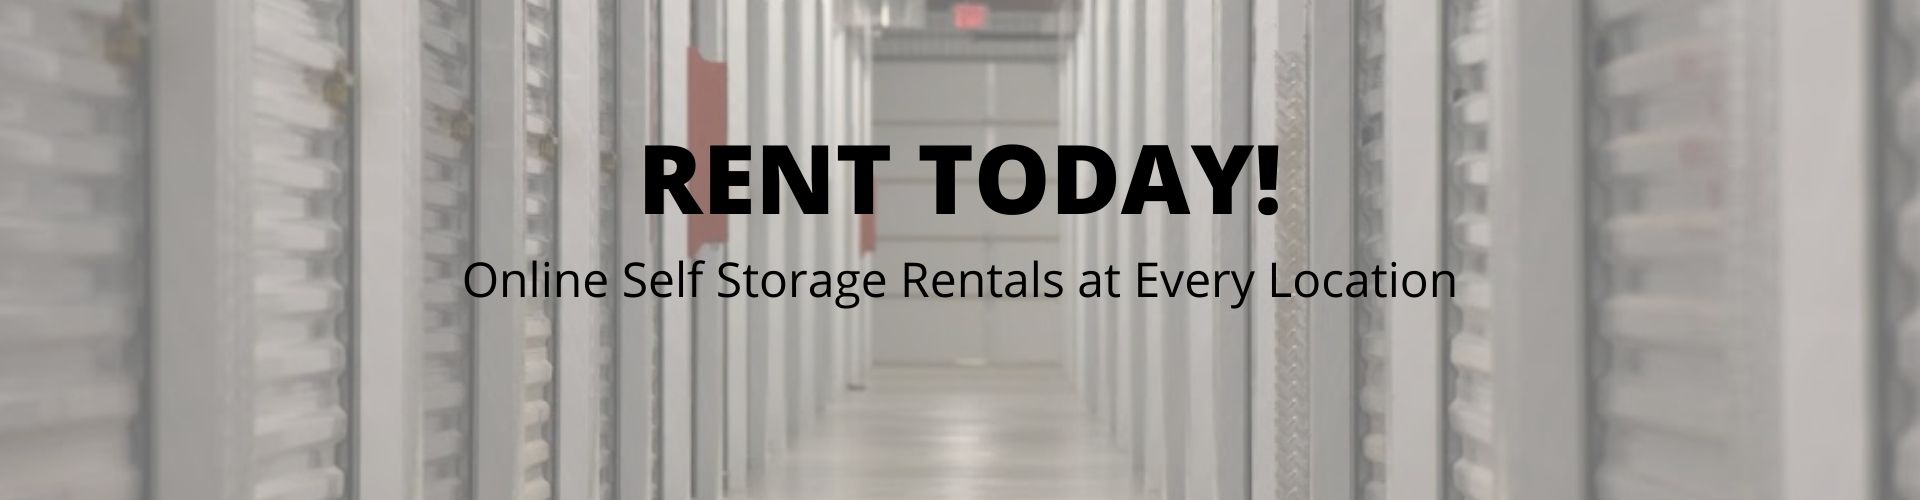 online storage rentals for SubTropolis Storage